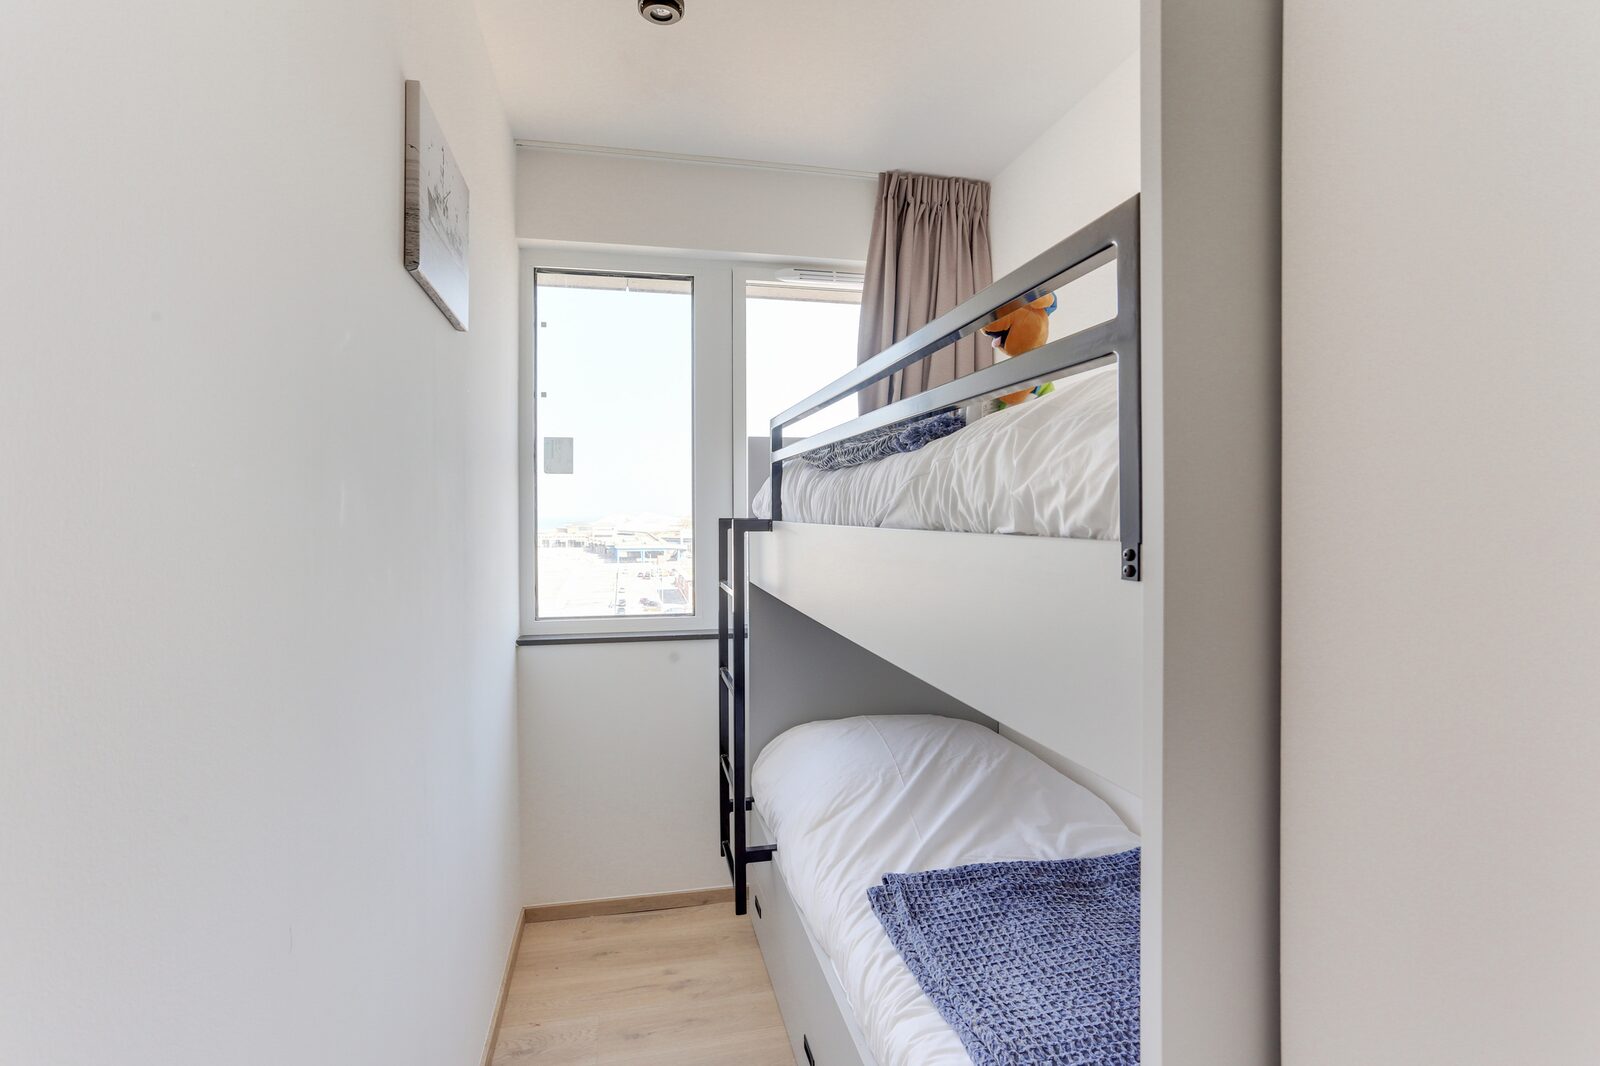 Suite luxe pour 4 personnes avec 2 chambres et balcon, adaptée PMR